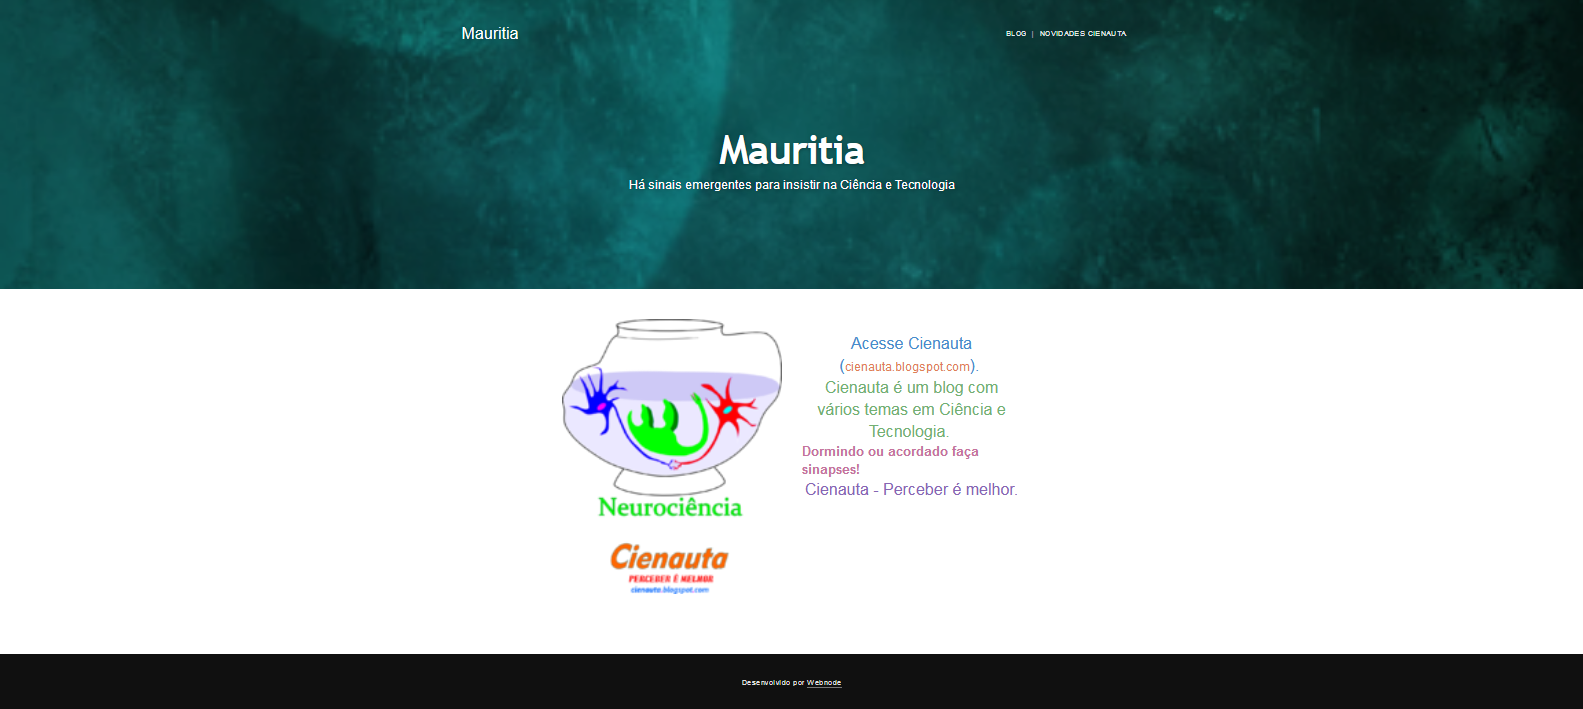 Mauritia